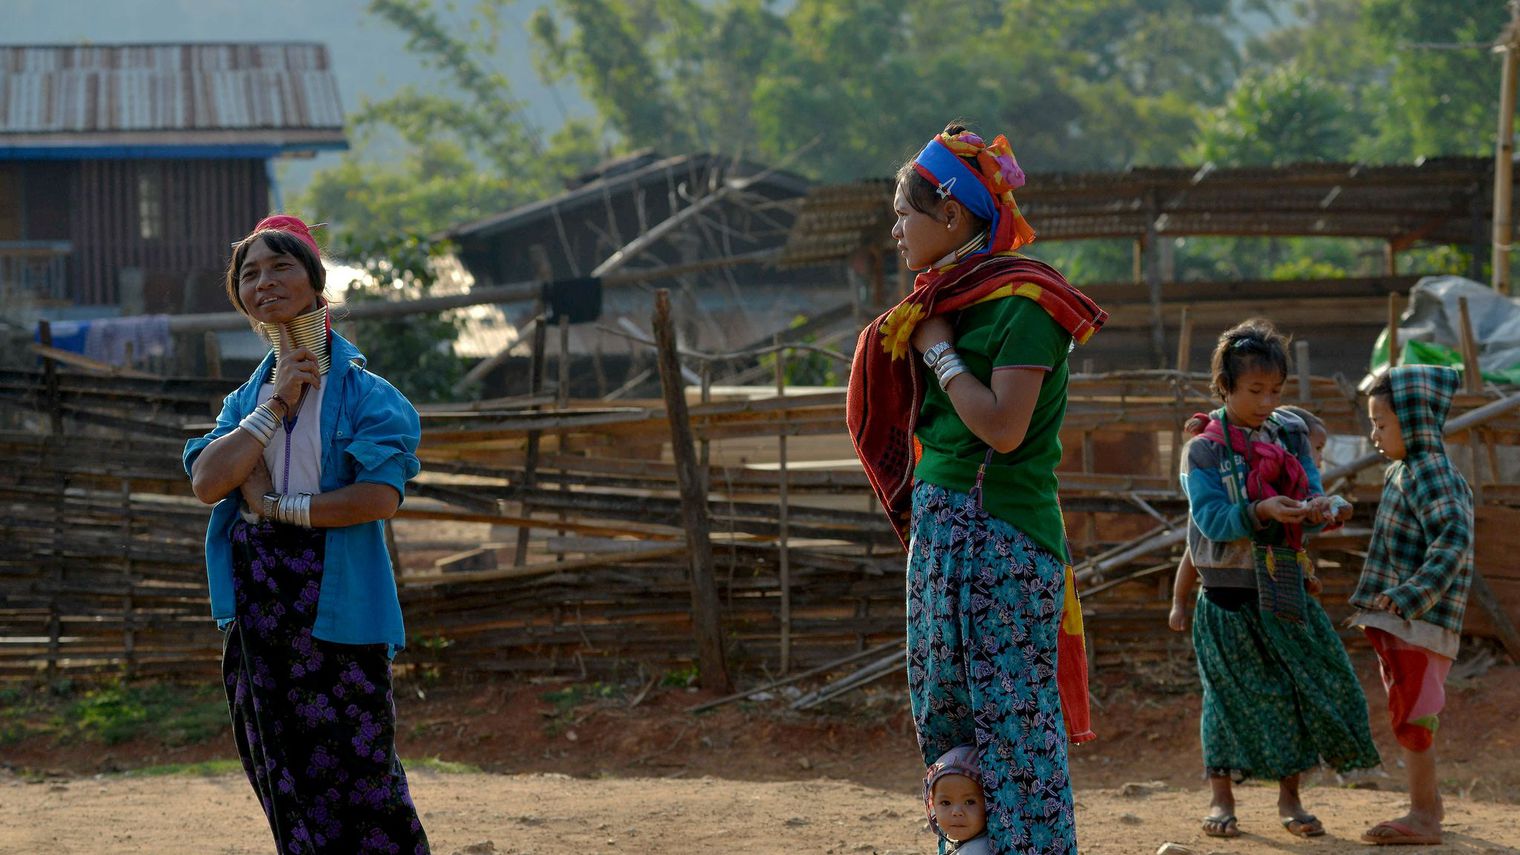 Les "femmes girafes" de Birmanie rêvent d'un autre tourisme pour leur région